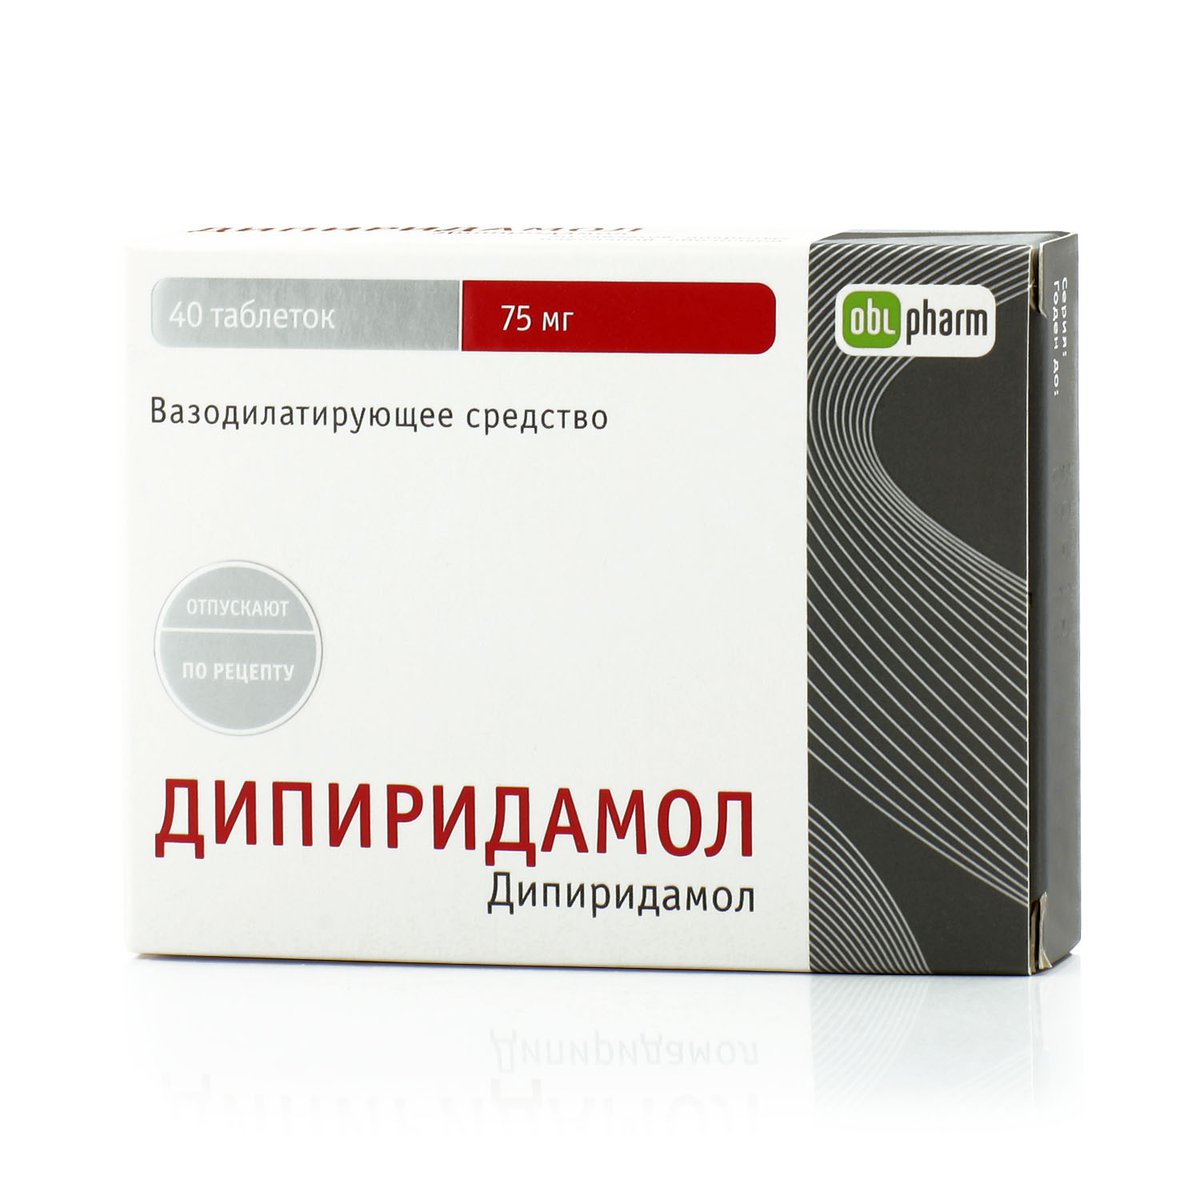 Дипиридамол (таблетки, 40 шт, 75 мг, для приема внутрь) - цена,  .